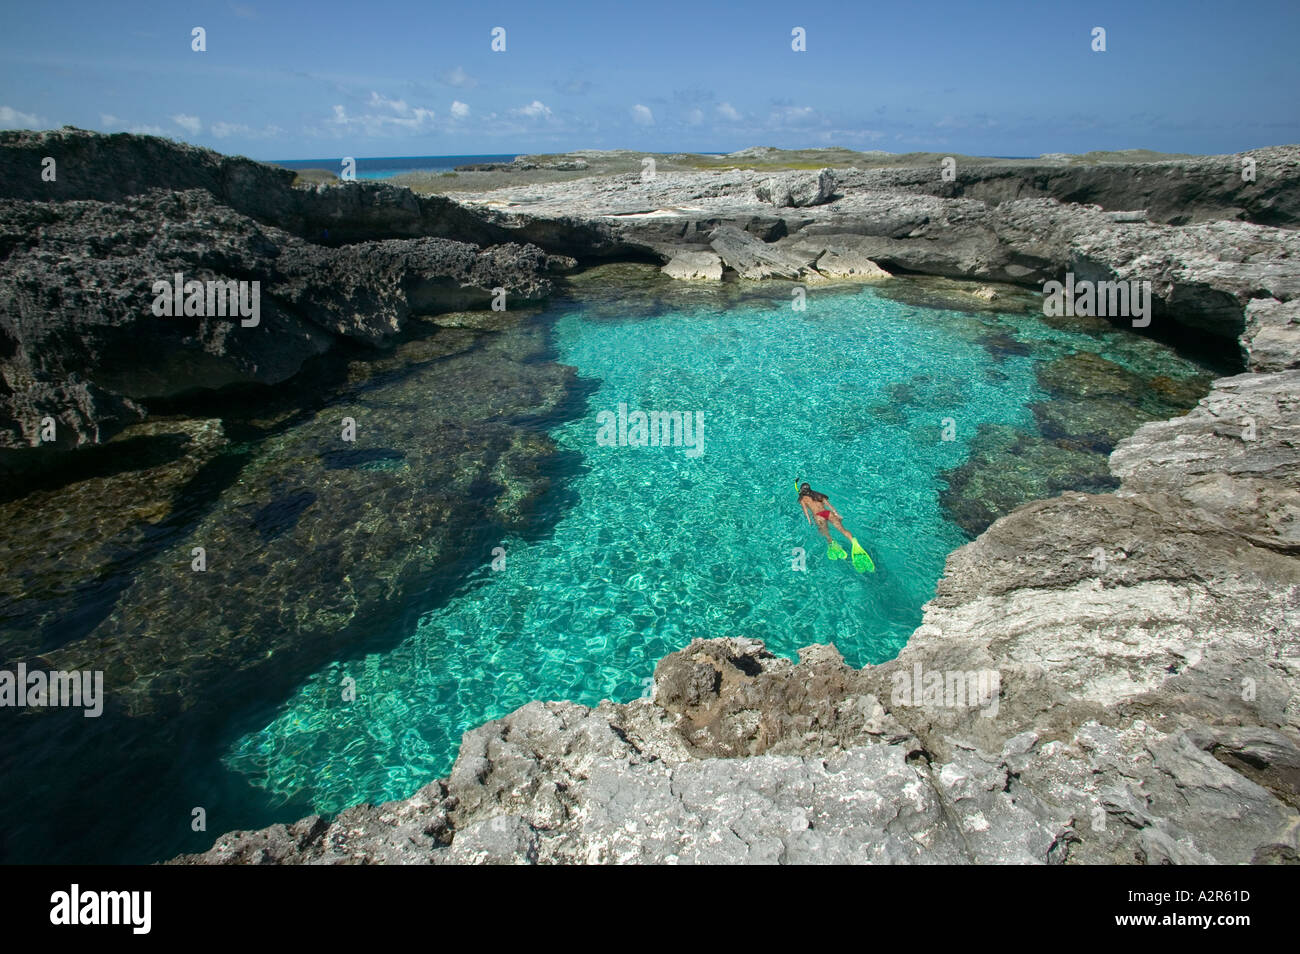 La donna lo snorkeling nel foro di nuoto Cay Sal Banca Isole Bahamas Foto Stock